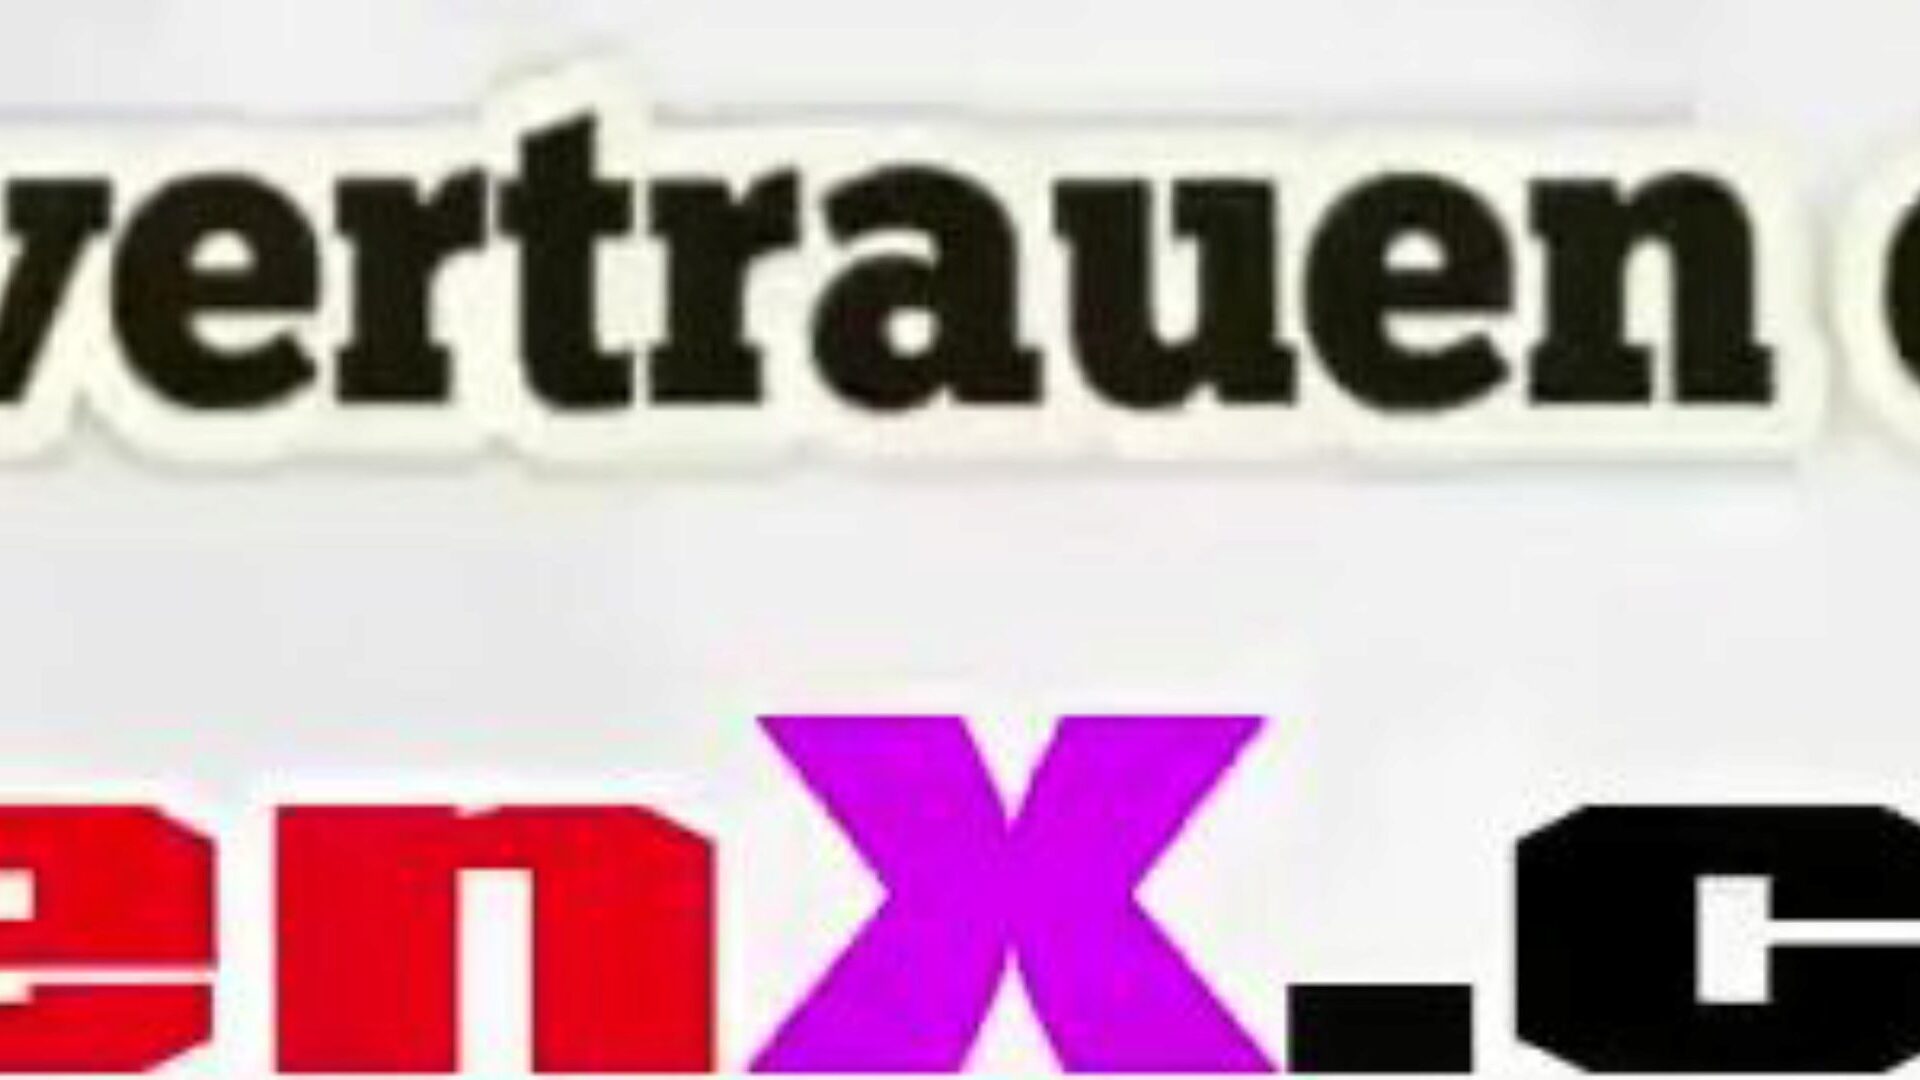 Fick Meine Geile Stiefmutter, Free German MILF HD Porn 53 Watch Fick Meine Geile Stiefmutter episode on xHamster, the fattest HD fuckfest tube web site with tons of free German German MILF & Ficking porn vids